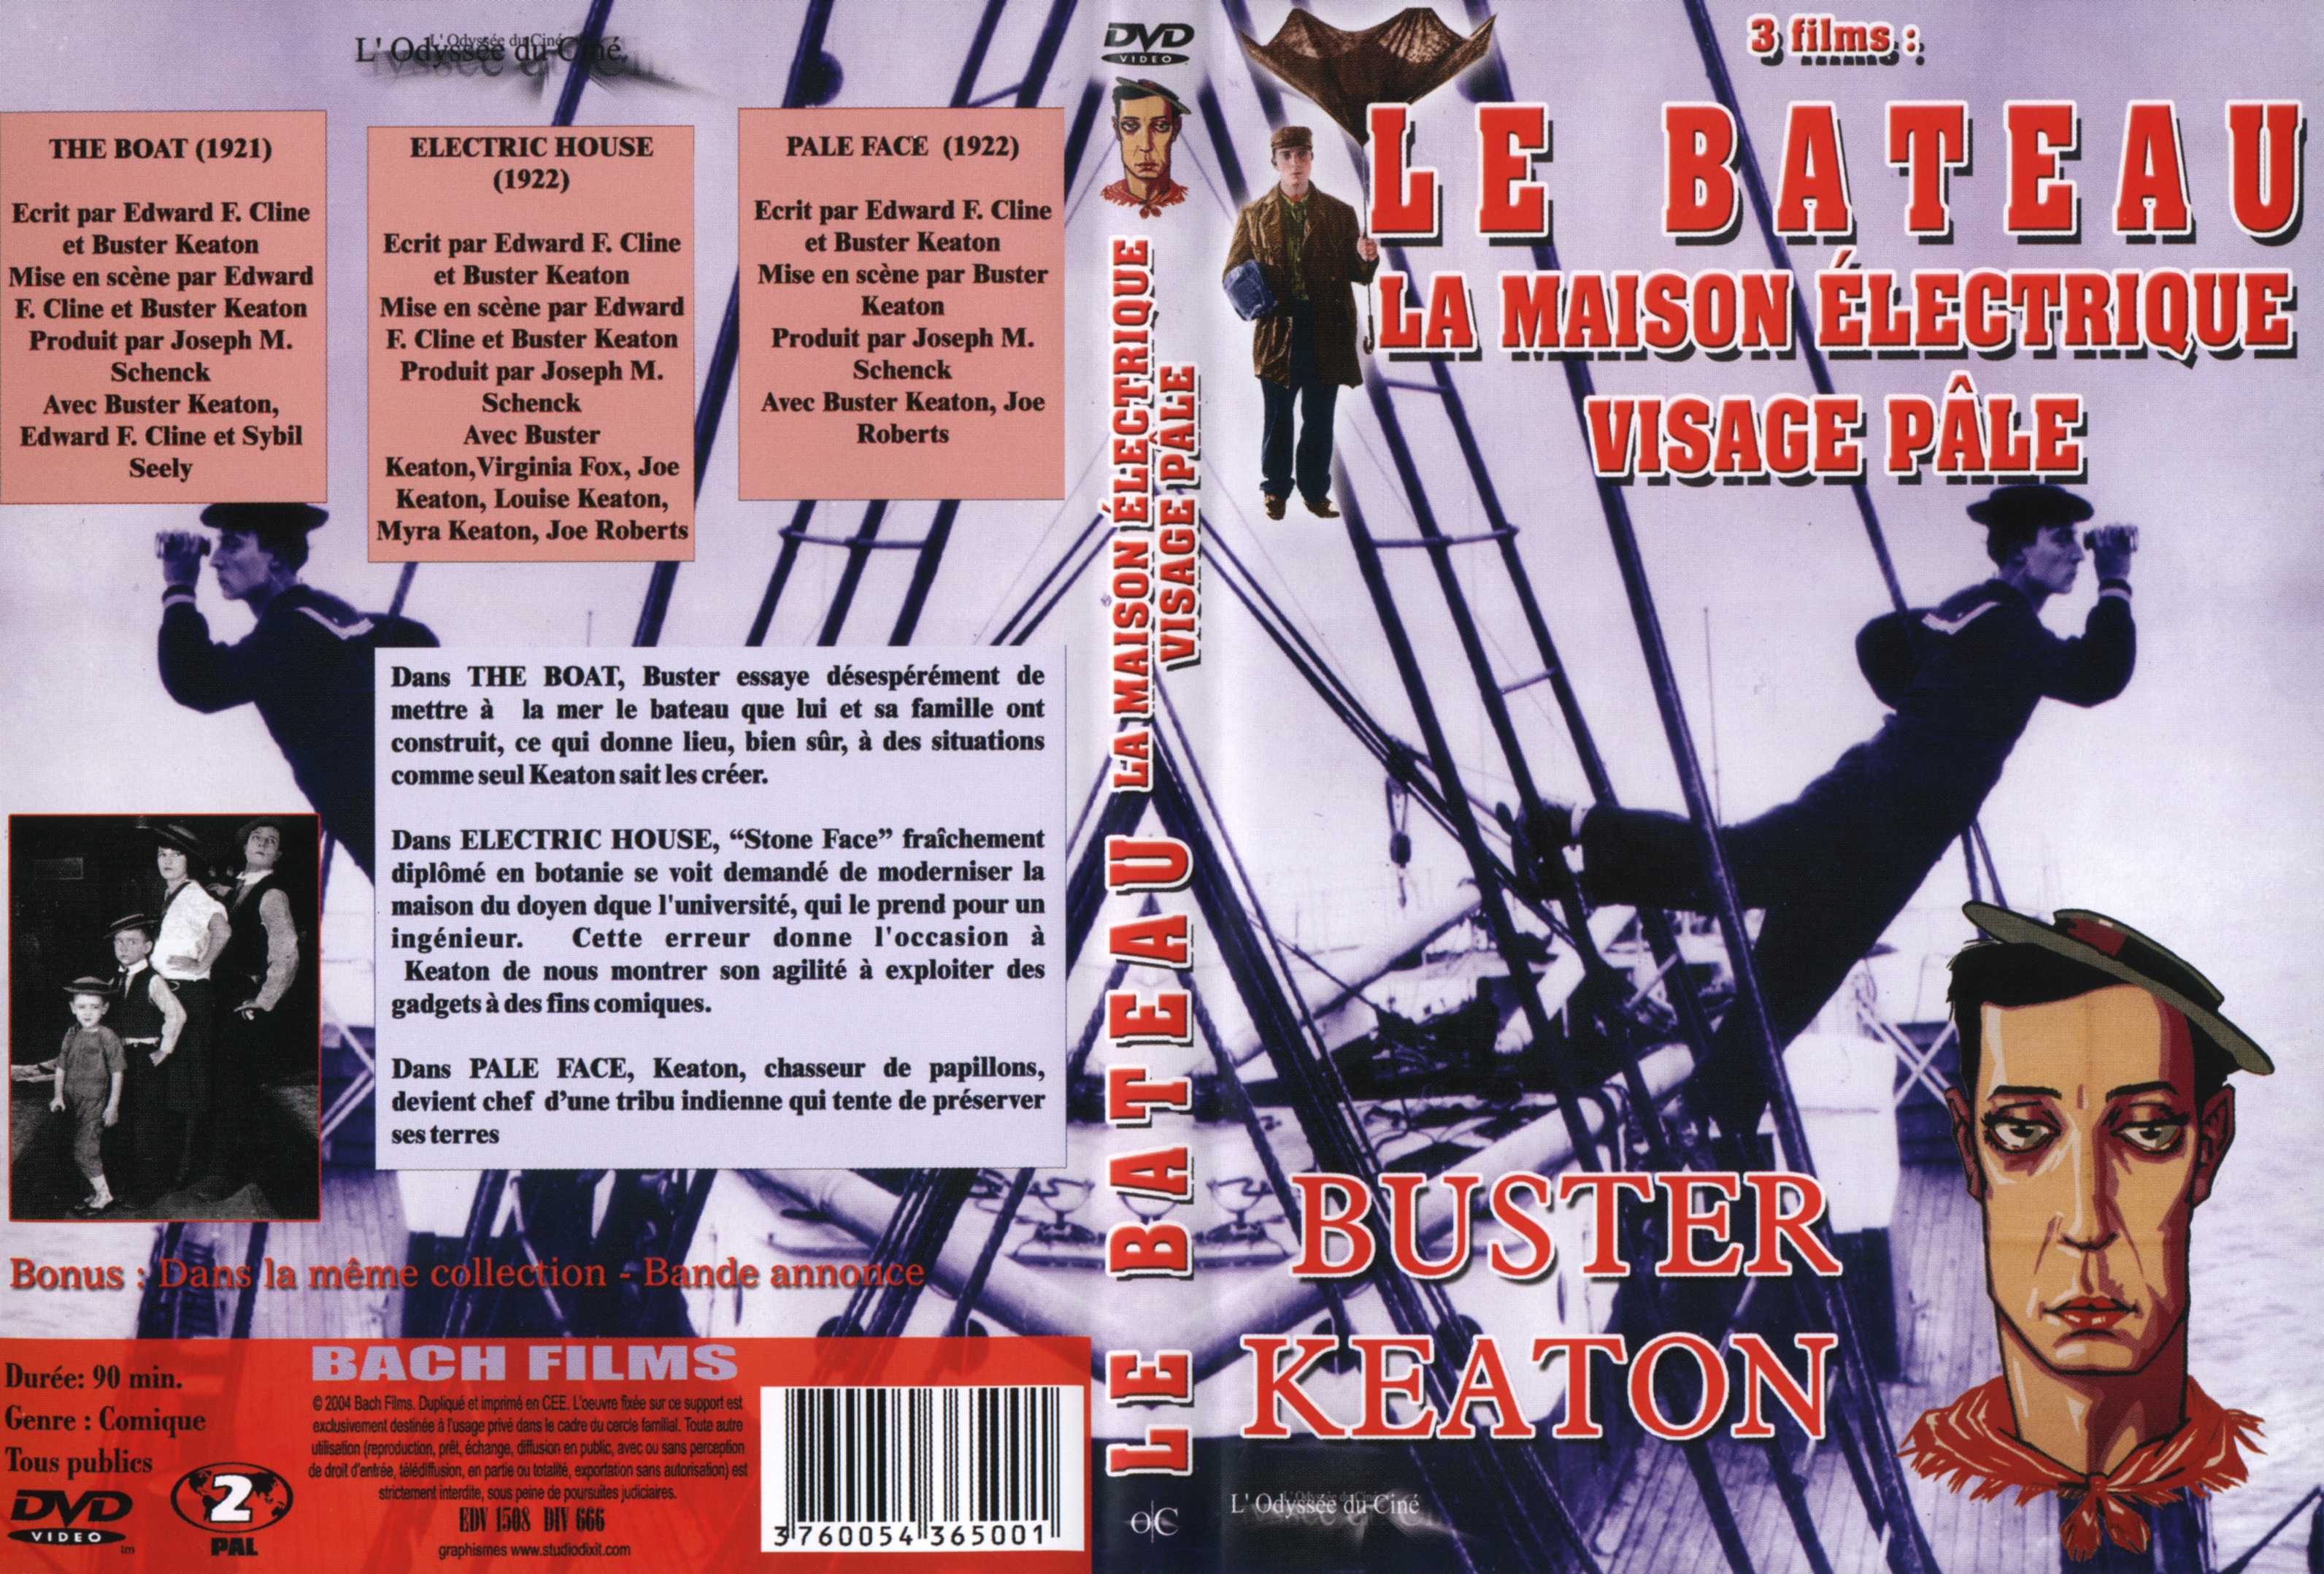 Jaquette DVD Buster Keaton le bateau la maison electrique visage pale